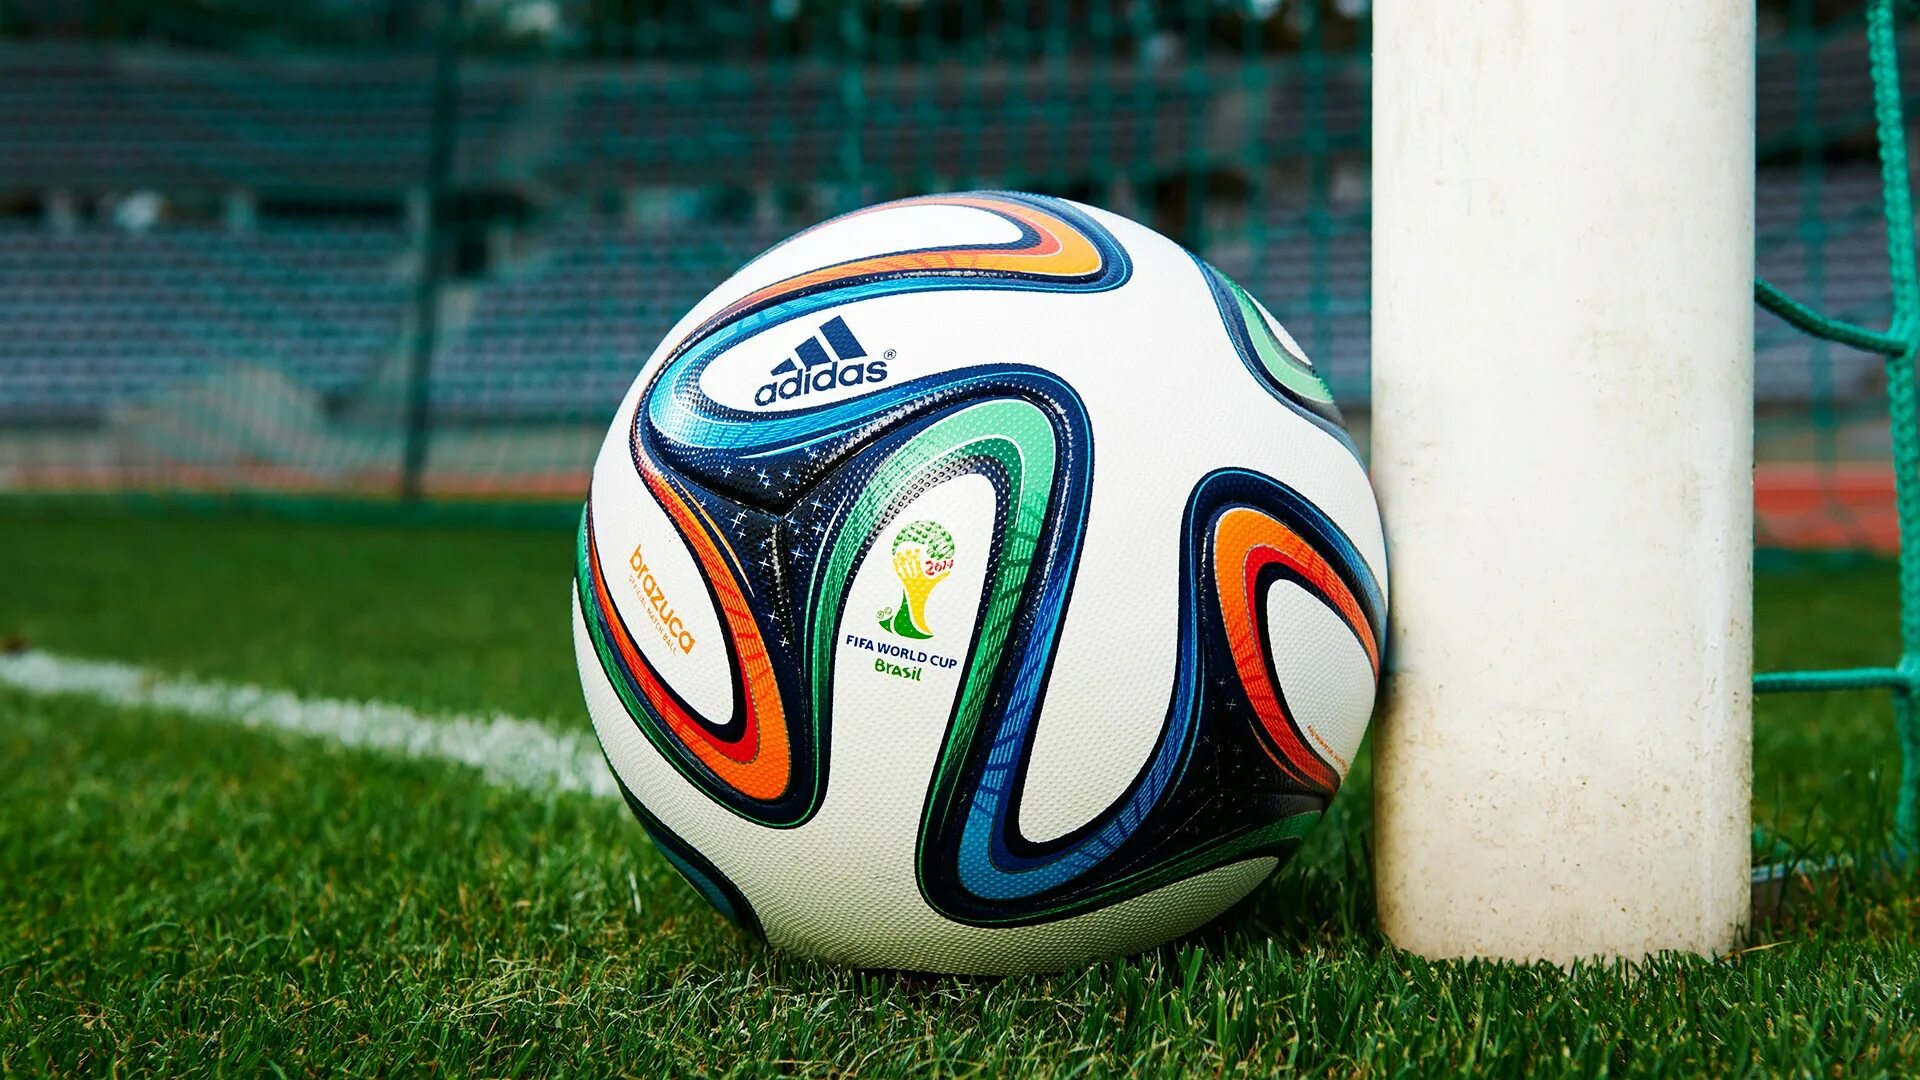 World cup soccer. Адидас бразука 2014. Футбольный мяч adidas Brazuca. Мяч бразука оранжевый.